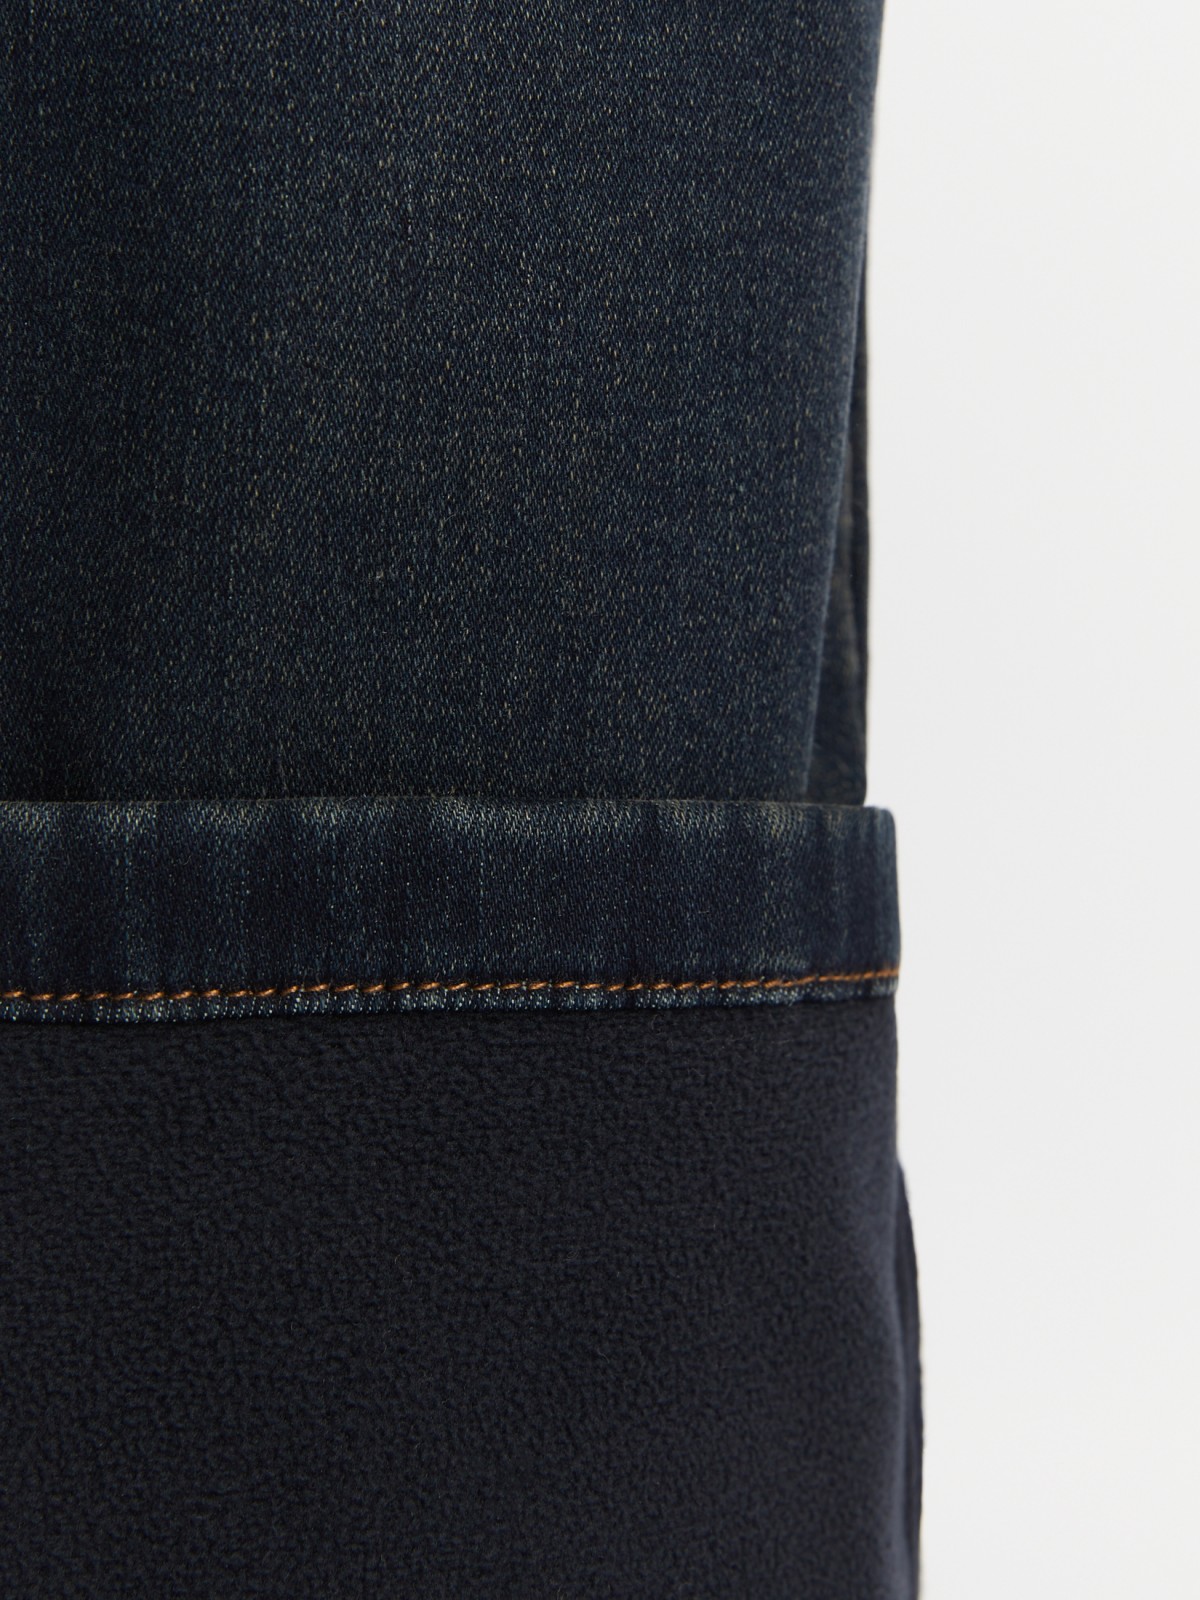 Утеплённые джинсы прямого фасона Regular с флисом внутри